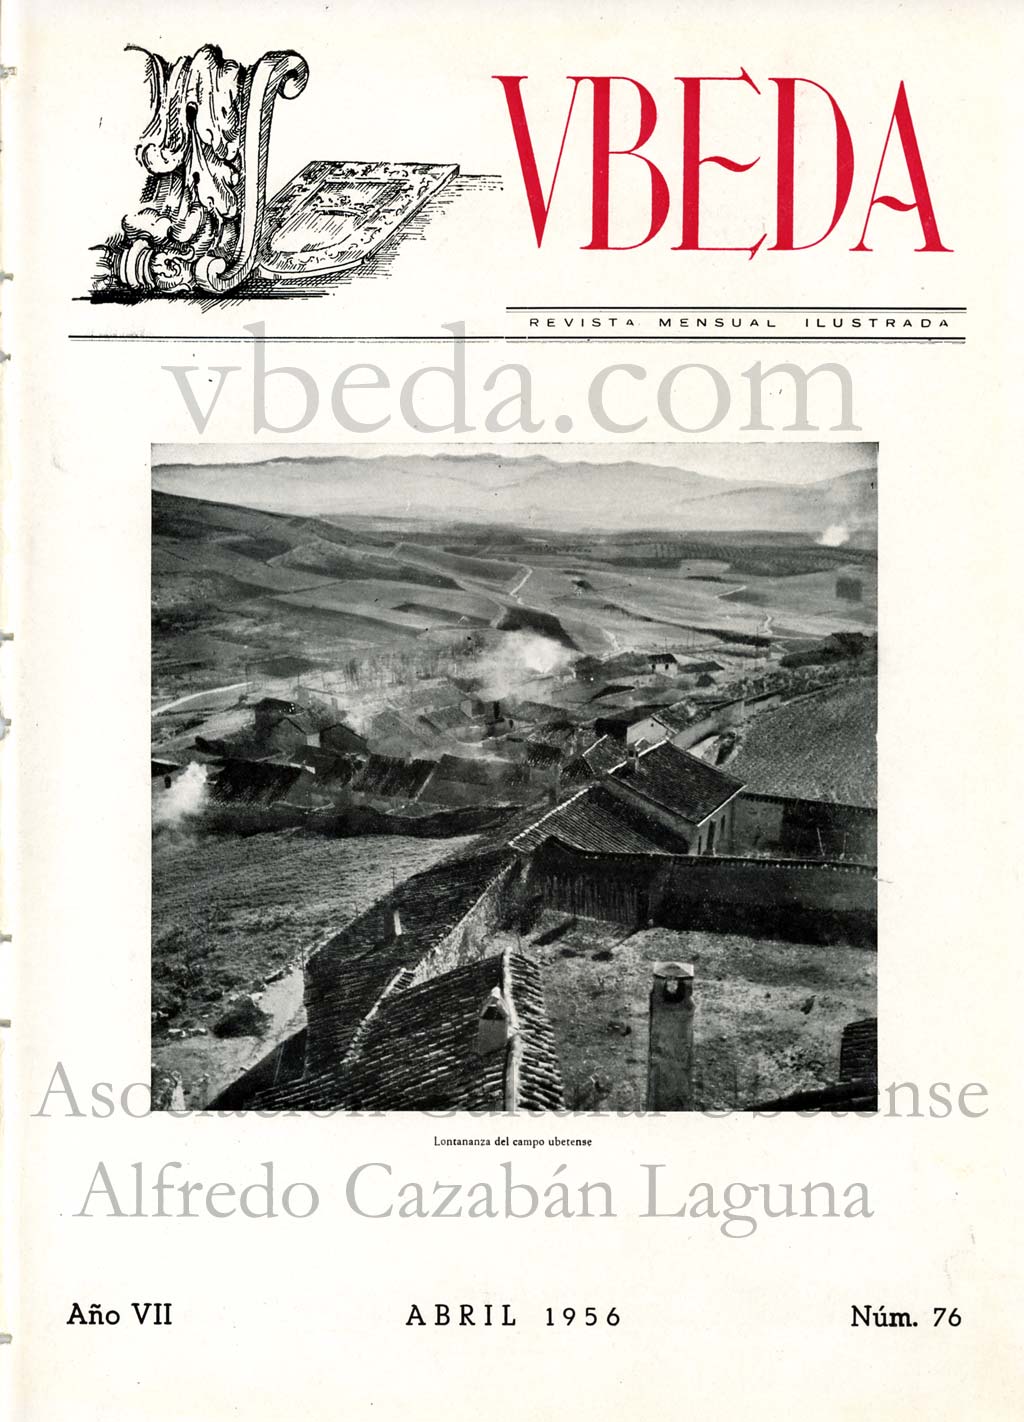 Revista Vbeda. Ao 7. N 76 de abril de 1956